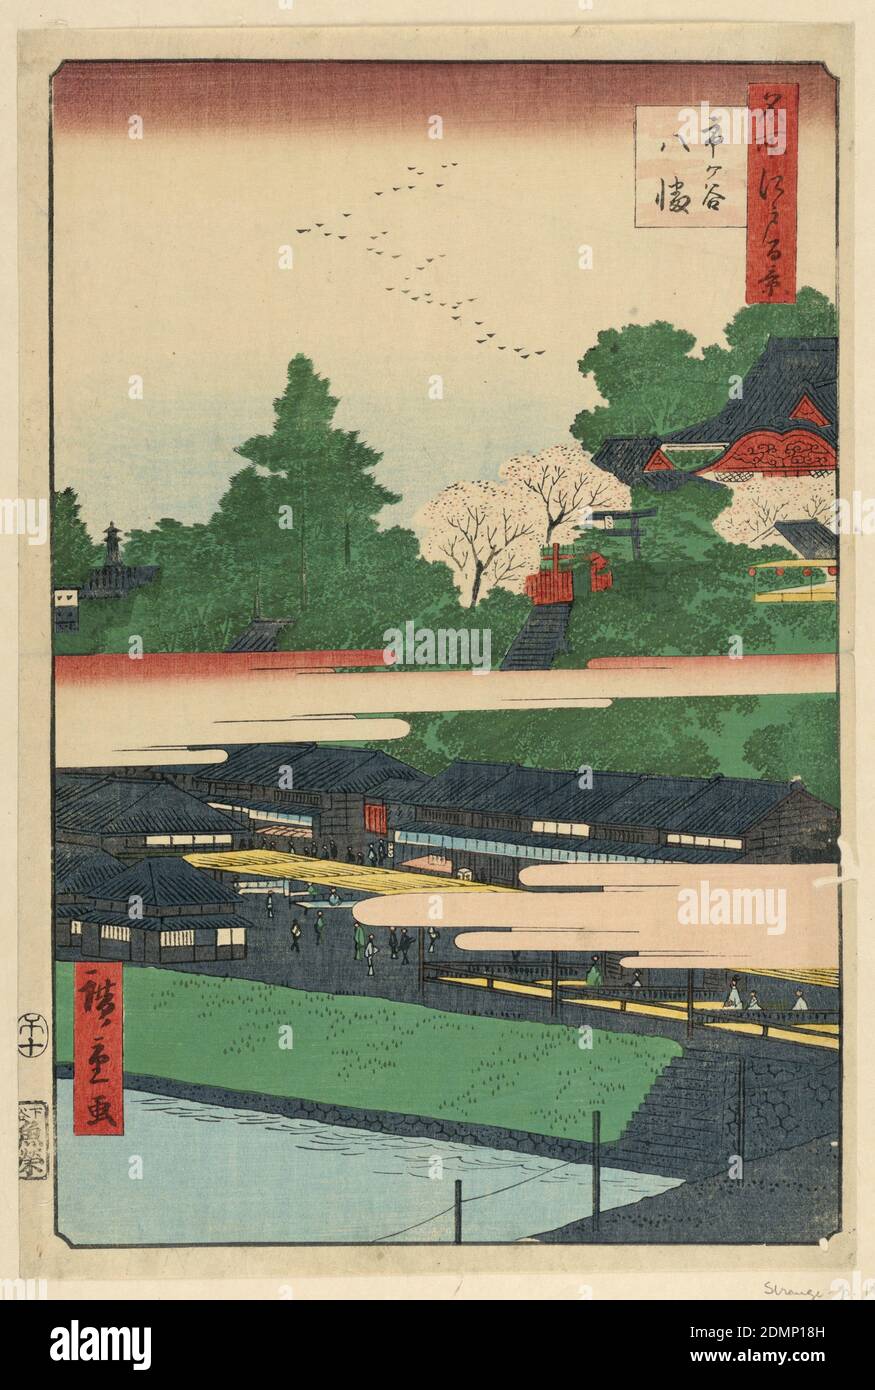 Ichigaya Hachiman aus der Serie 100 Views of Edo, Ando Hiroshige, japanisch, 1797–1858, Holzblock-Druck in farbiger Tinte auf Papier, Pink Clouds teilt diesen Druck in zwei Hälften. Der obere Teil besteht aus einer friedlichen und kontemplativen Szene des Hachiman Schreins in Ichigaya. Der Schrein erscheint zwischen blühenden Kirschblüten und Teeblättern. Die untere Hälfte zeigt die Straßen, gefüllt mit Menschen und Einkaufsbuden. In der Mitte des 19. Jahrhunderts war diese Station berühmt für ihre Teehäuser und Prostituierten., Japan, 1858, Landschaften, Drucken Stockfoto